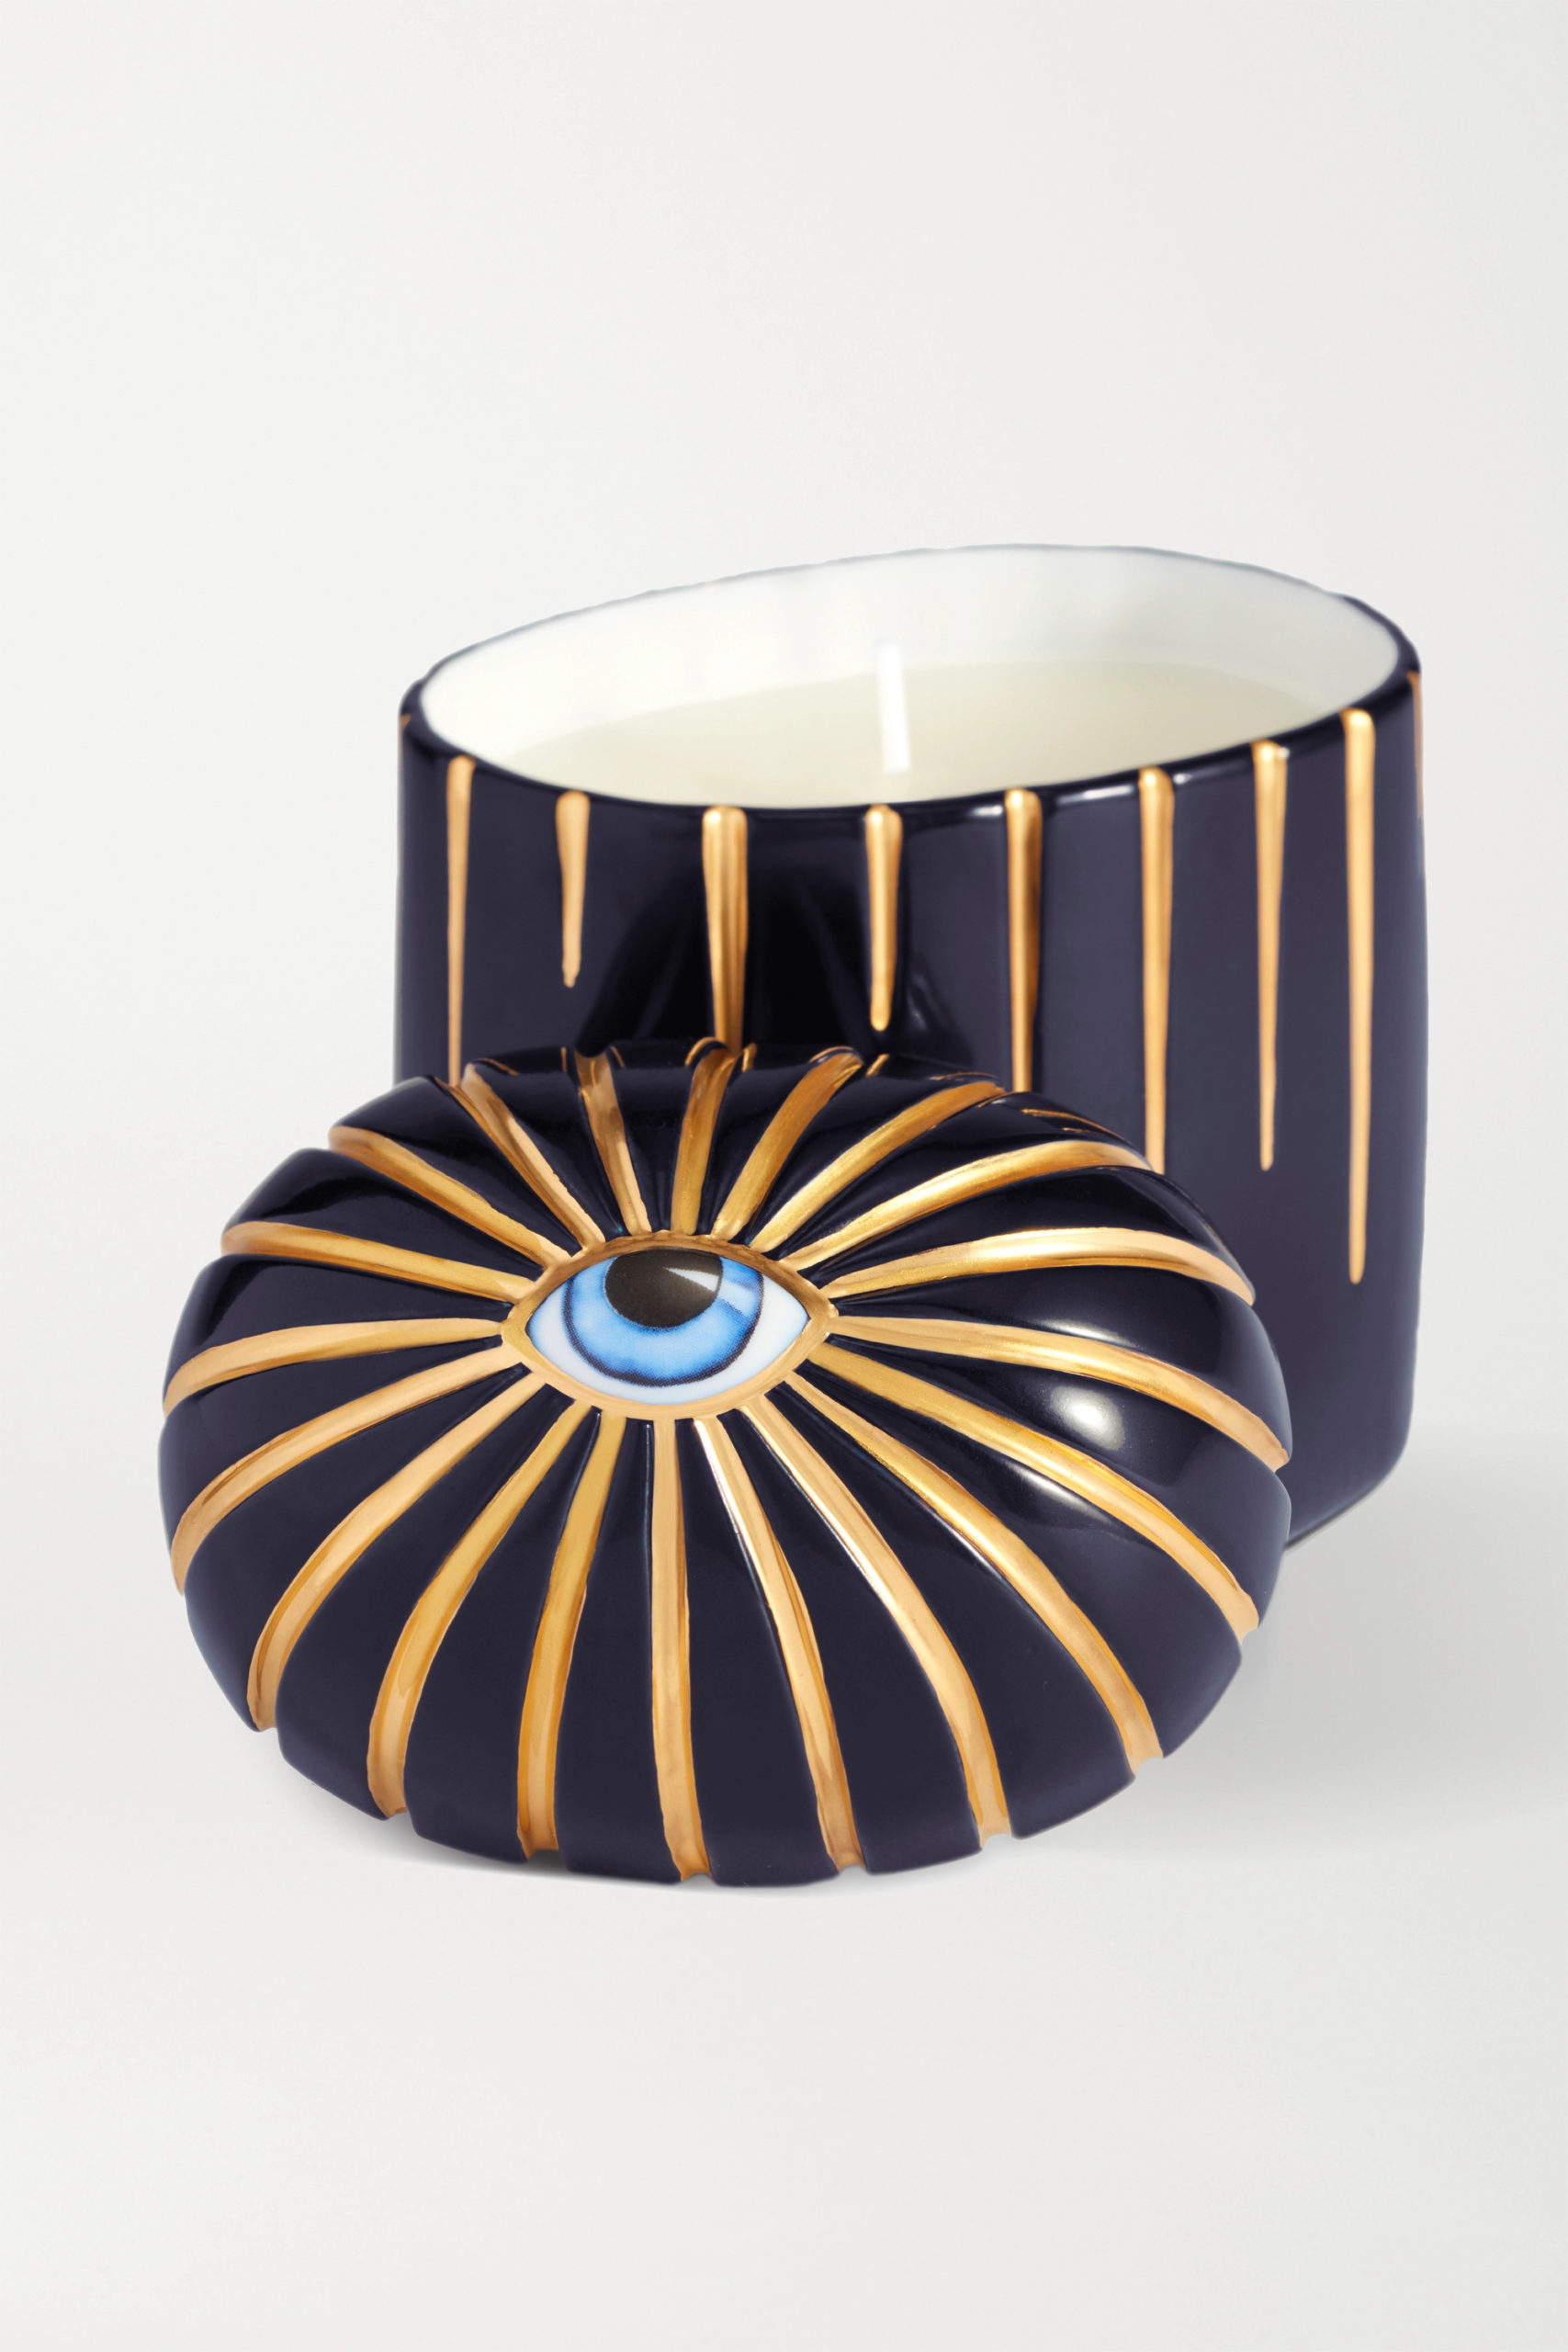 Luxury Candle Decorating Ideas